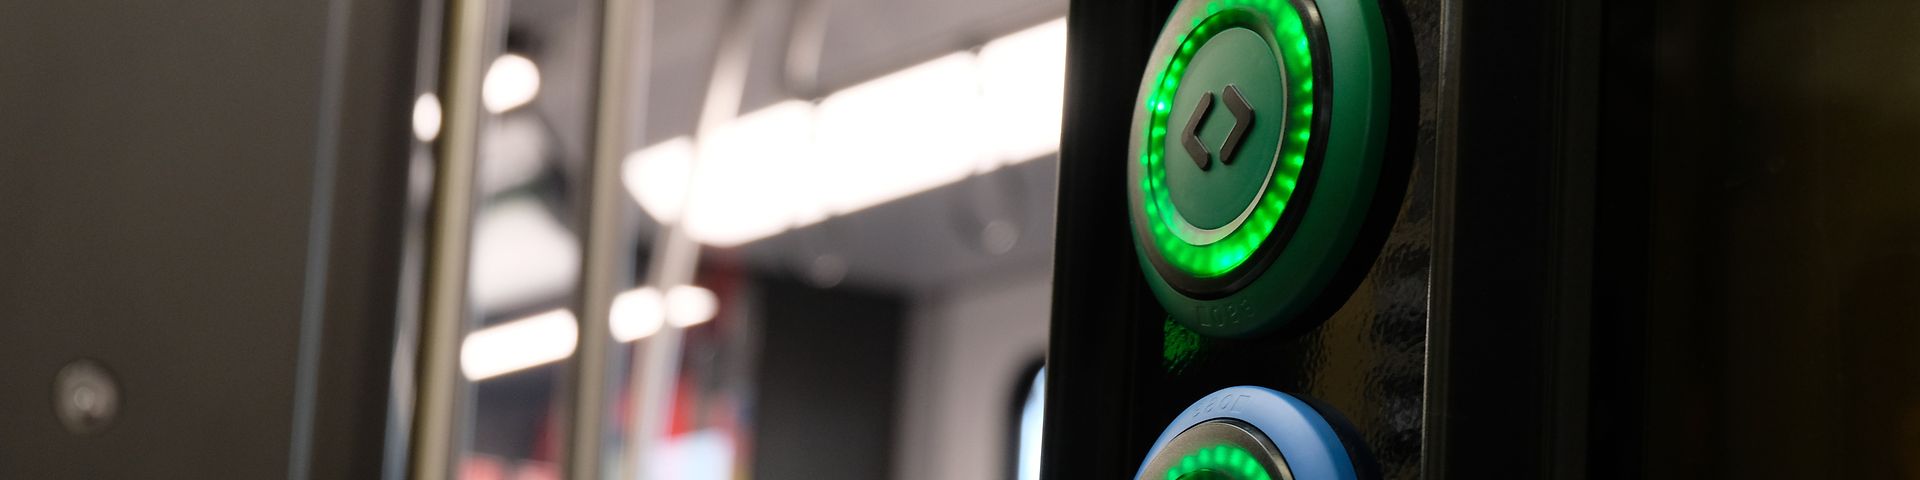 open train door with active, green lighted door opening buttons